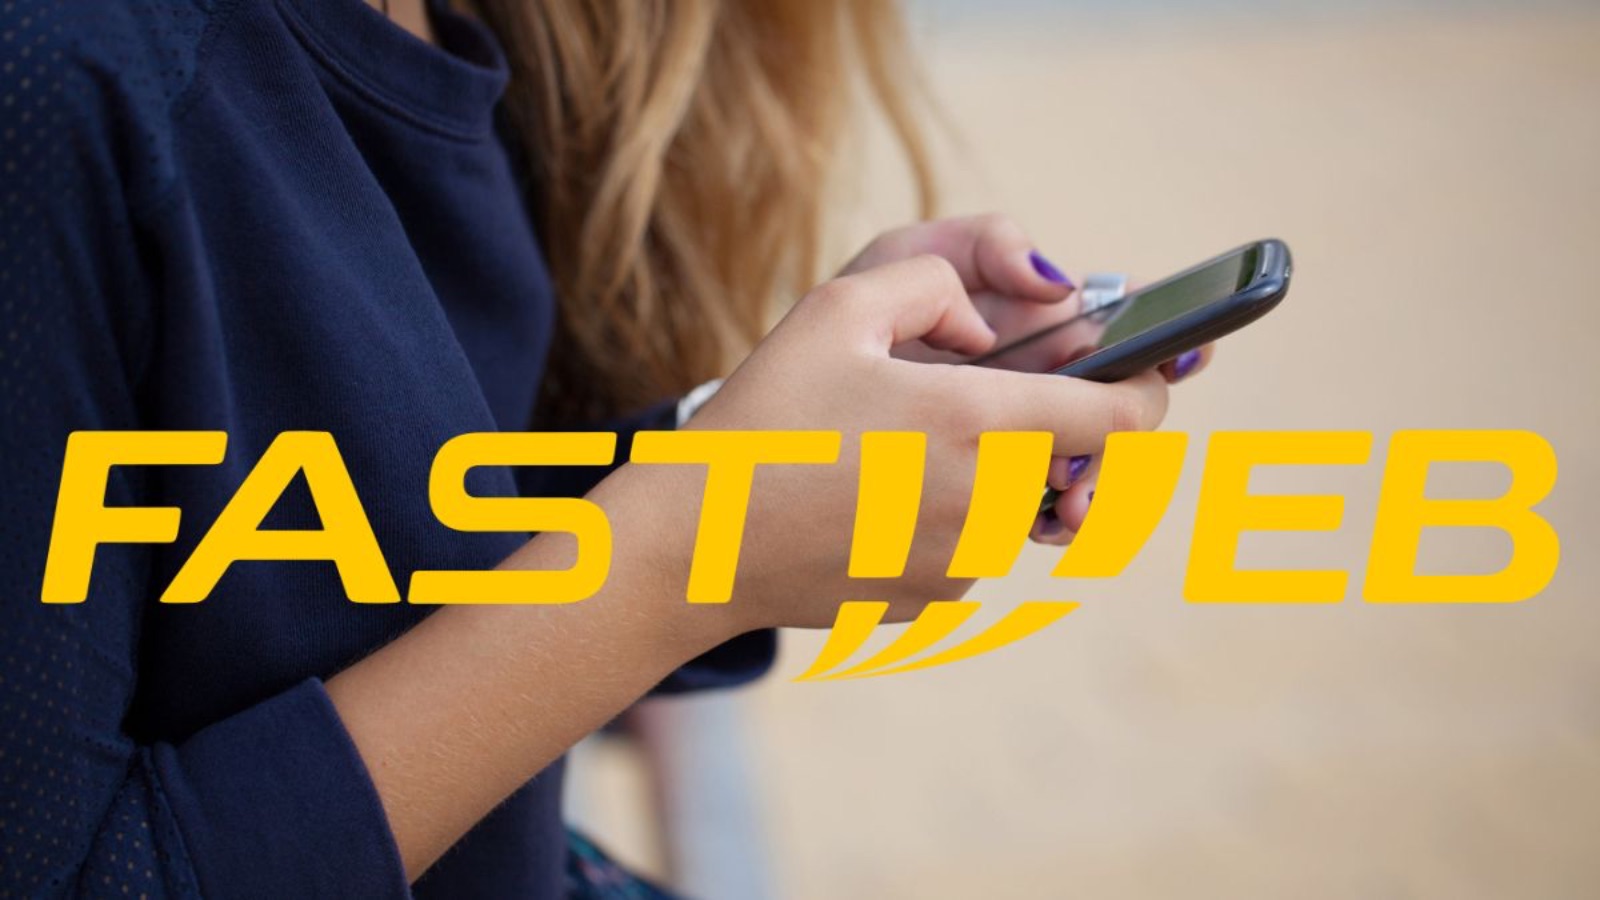 Fastweb Mobile, la nuova offerta da 7 euro al mese con 150 GB